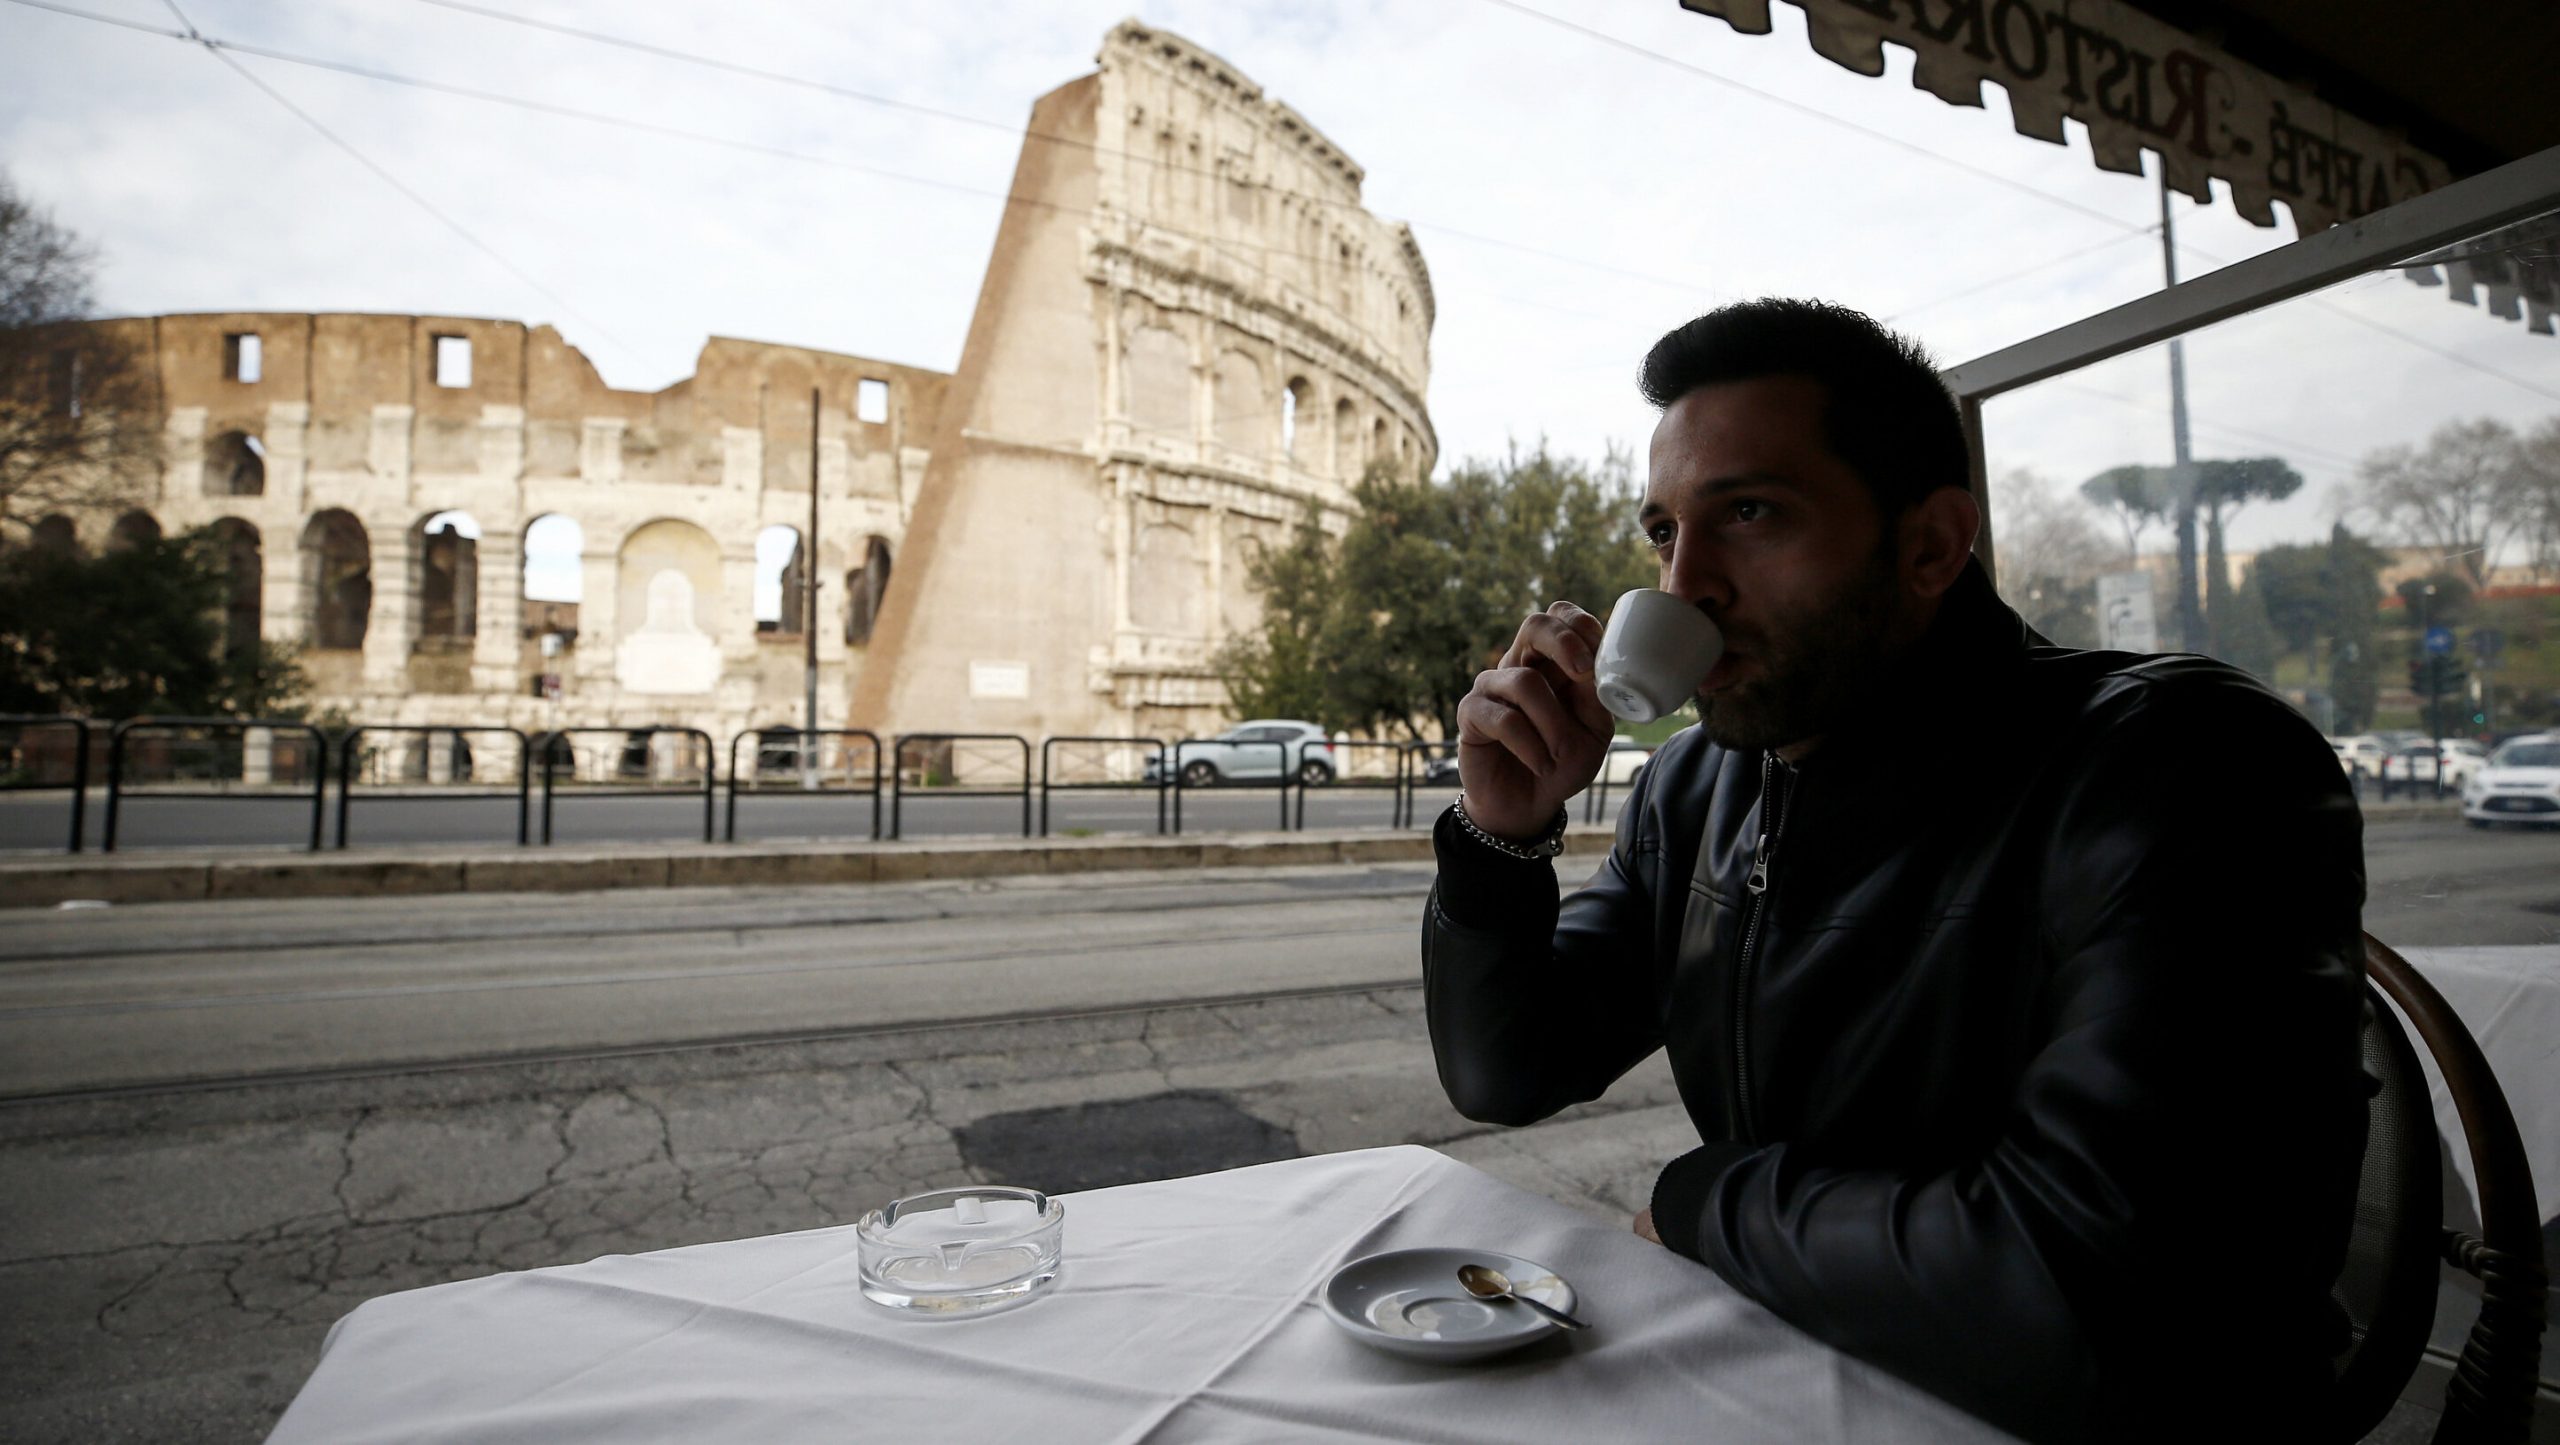 Prima zi aproape de normalitate| Italienii au mers din nou la muzee, restaurante, baruri